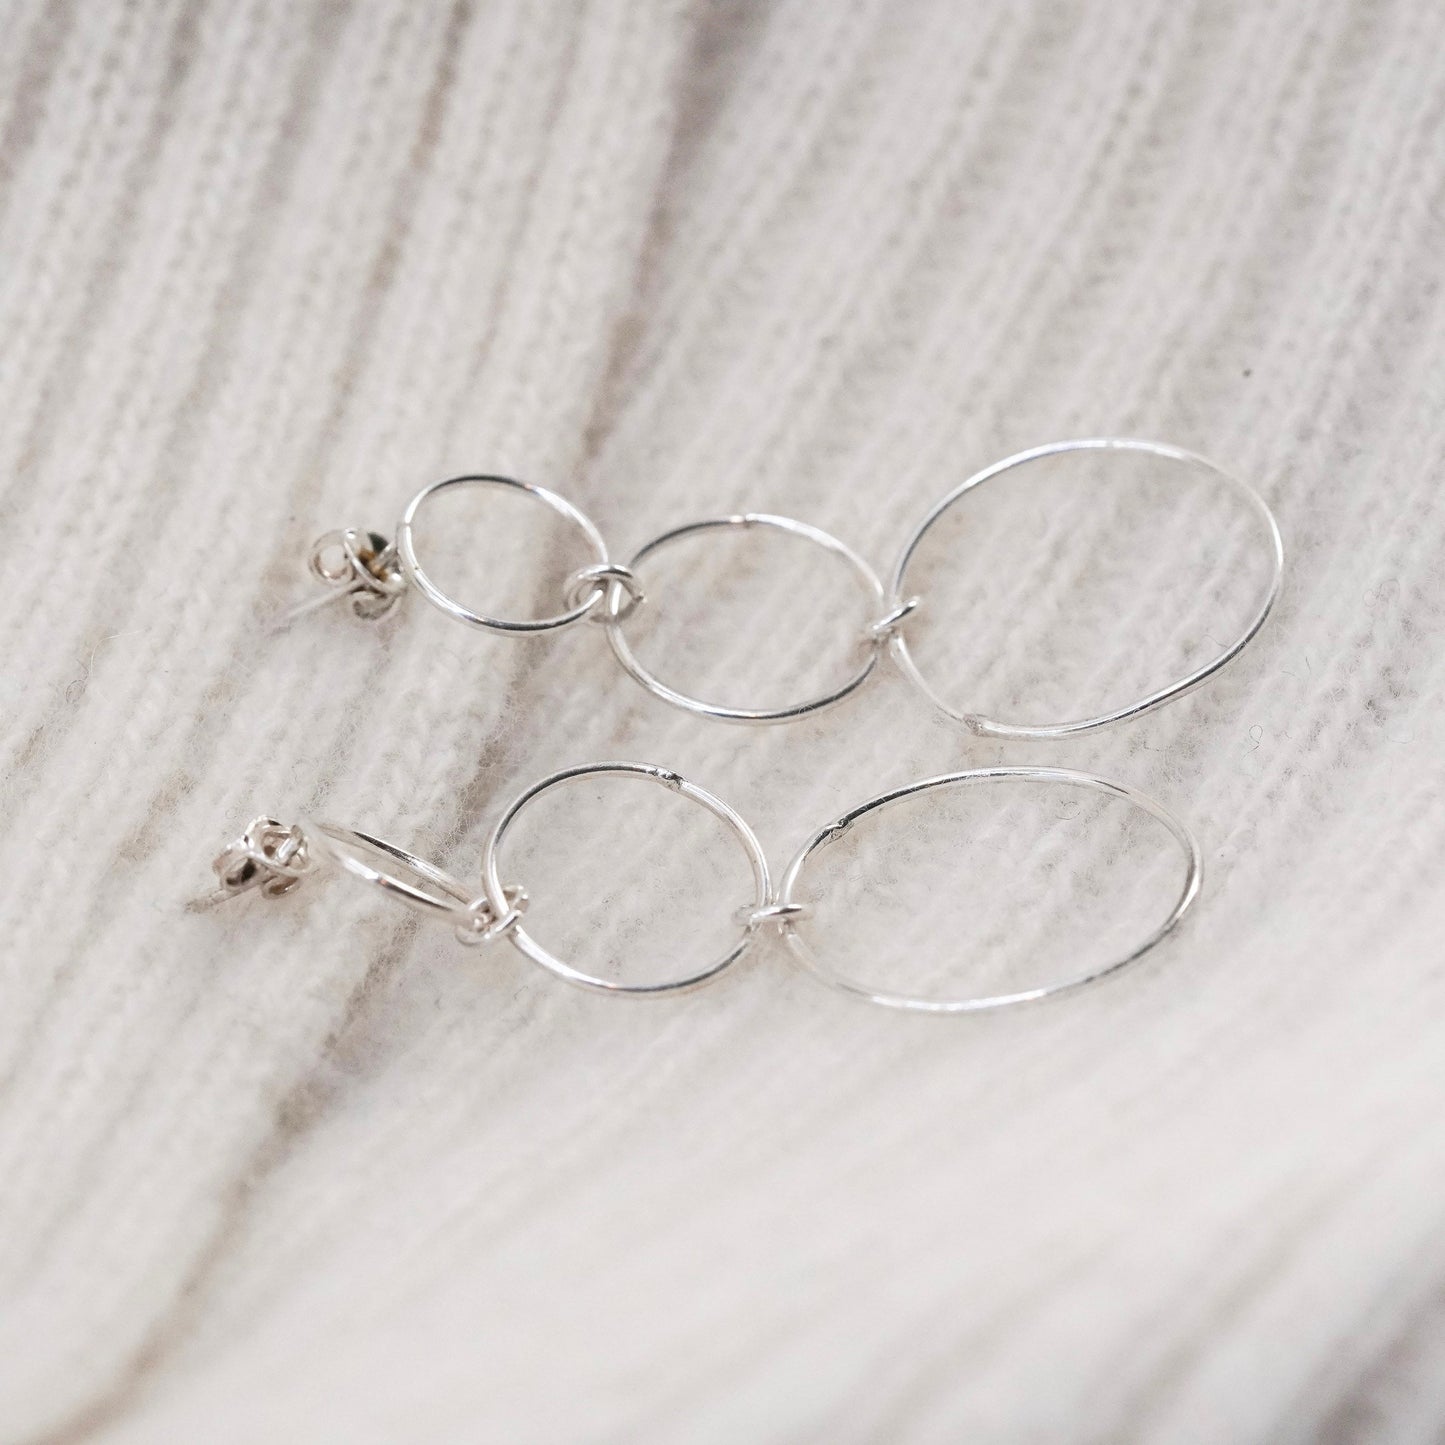 Vintage sterling silver handmade earrings, 925 multi circle dangles